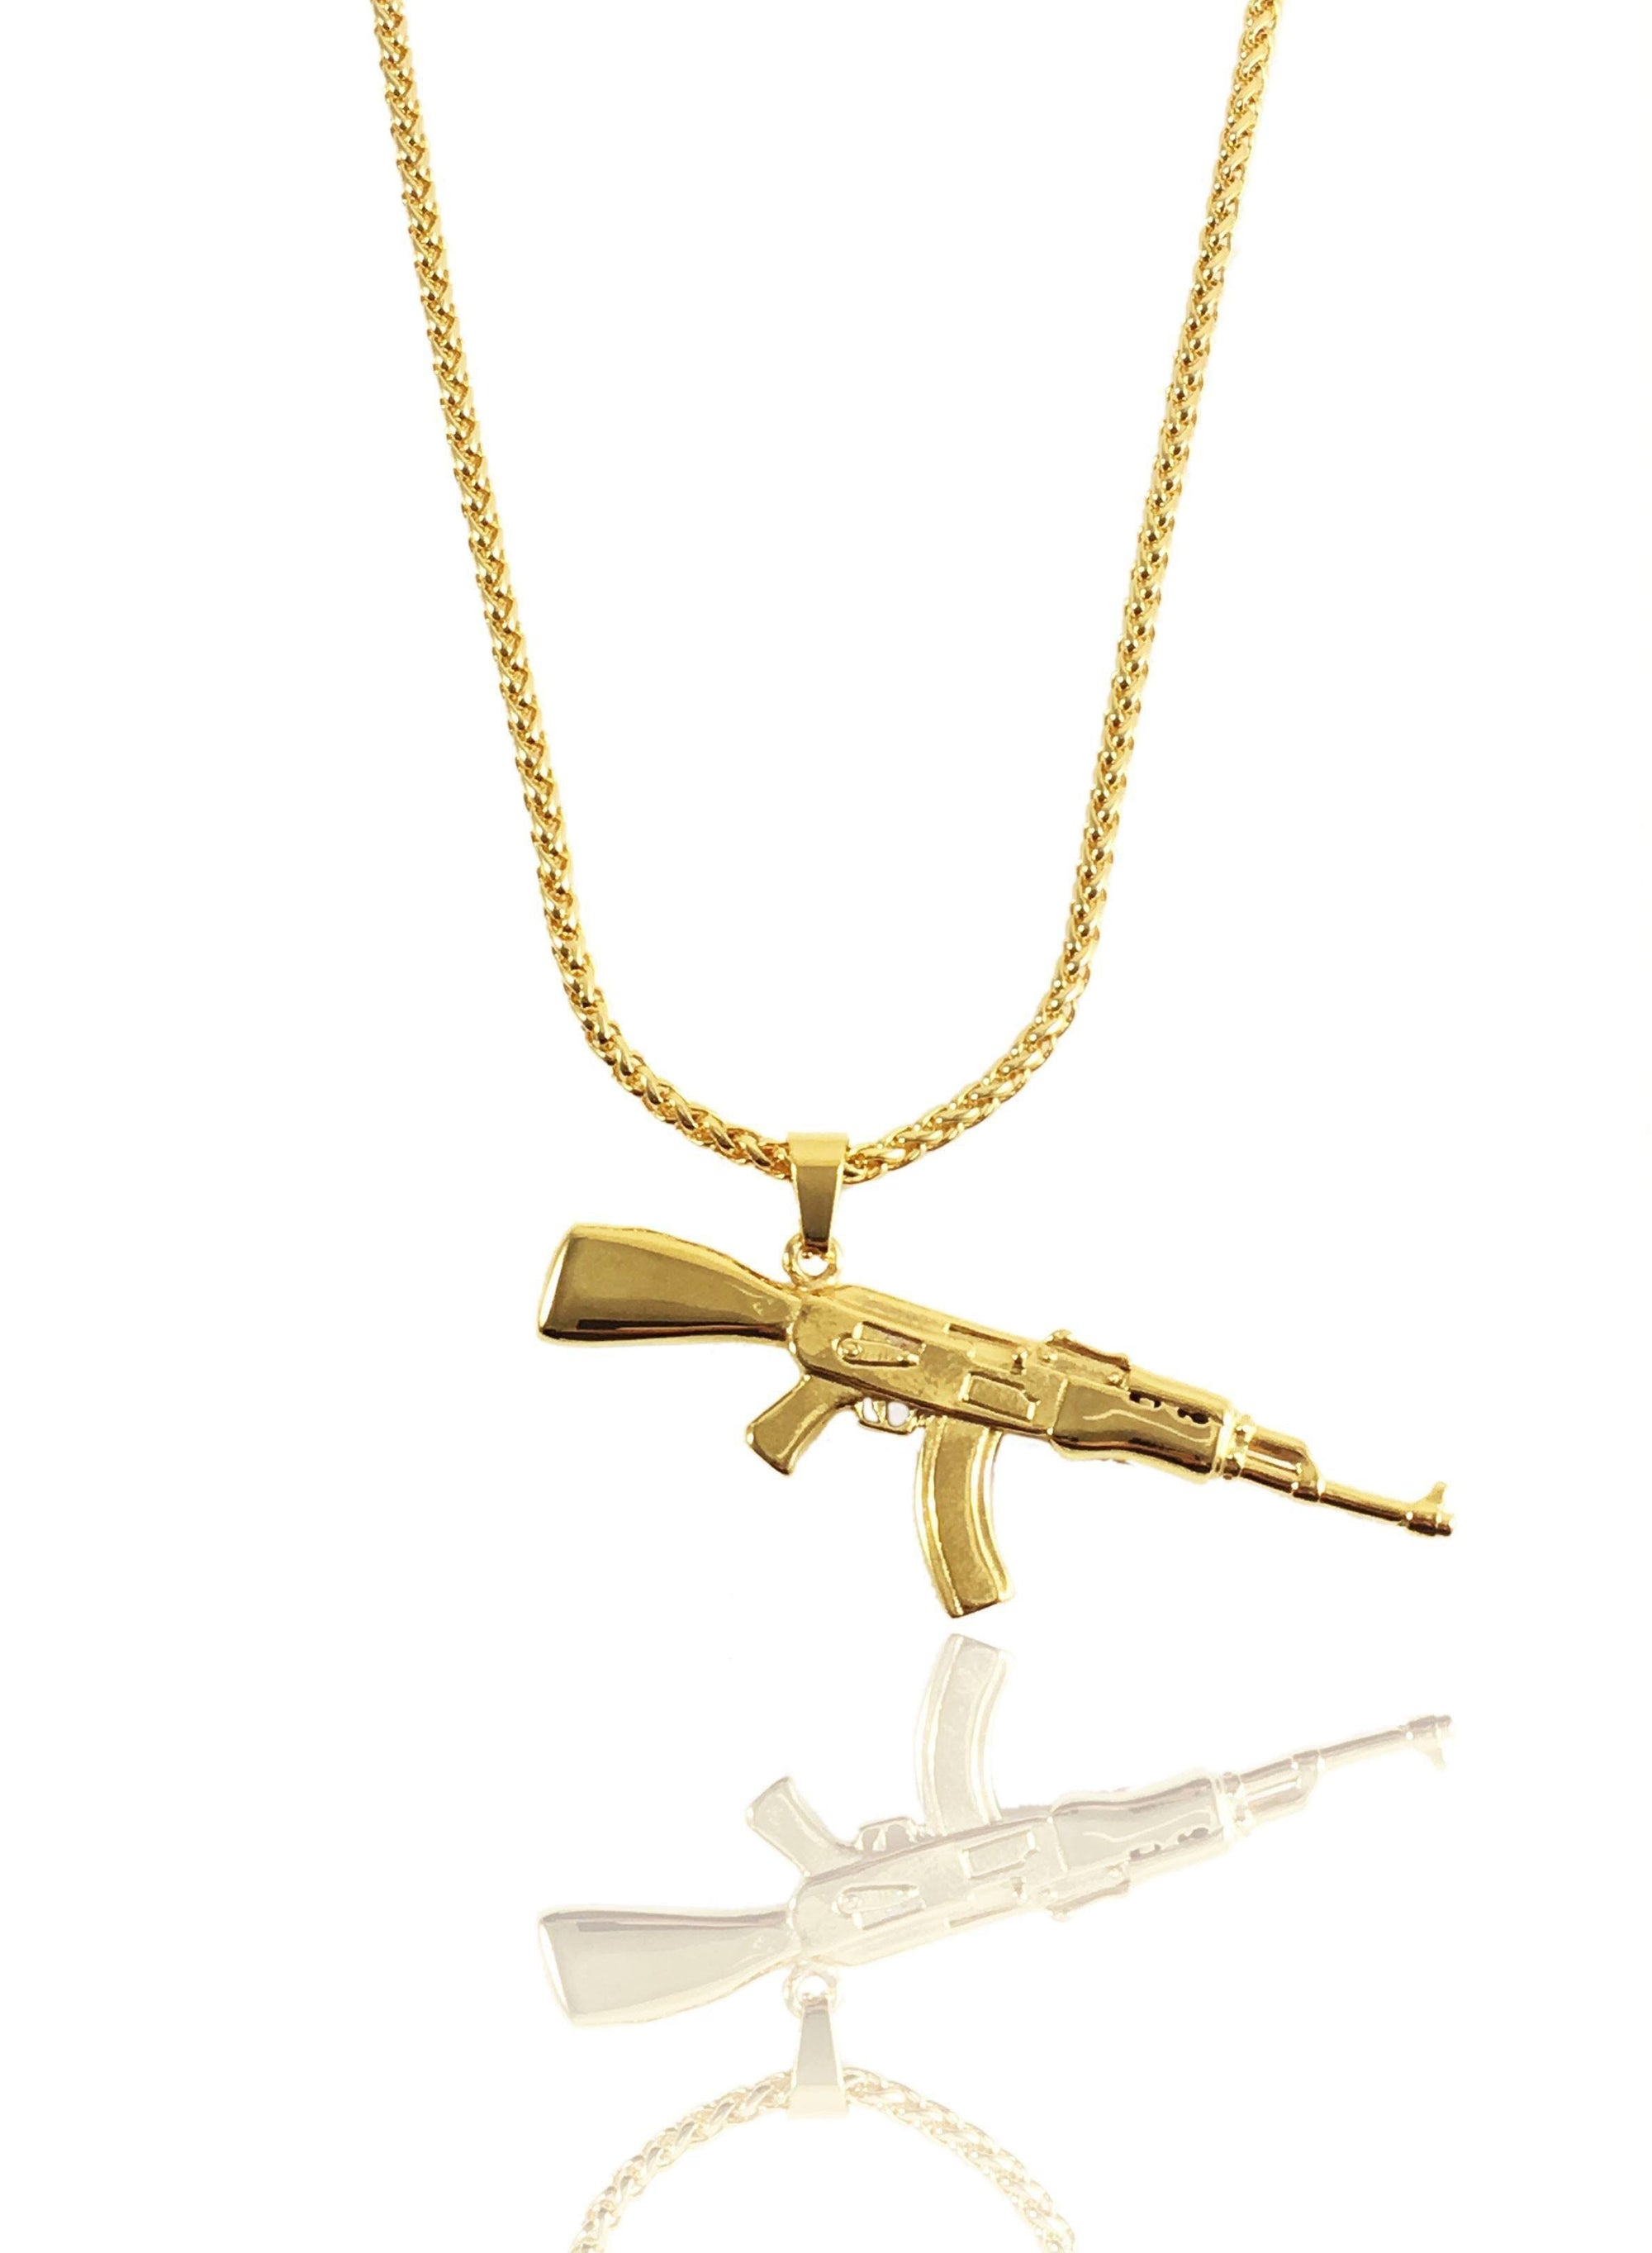 Necklace - AK-47 X 18k Gold